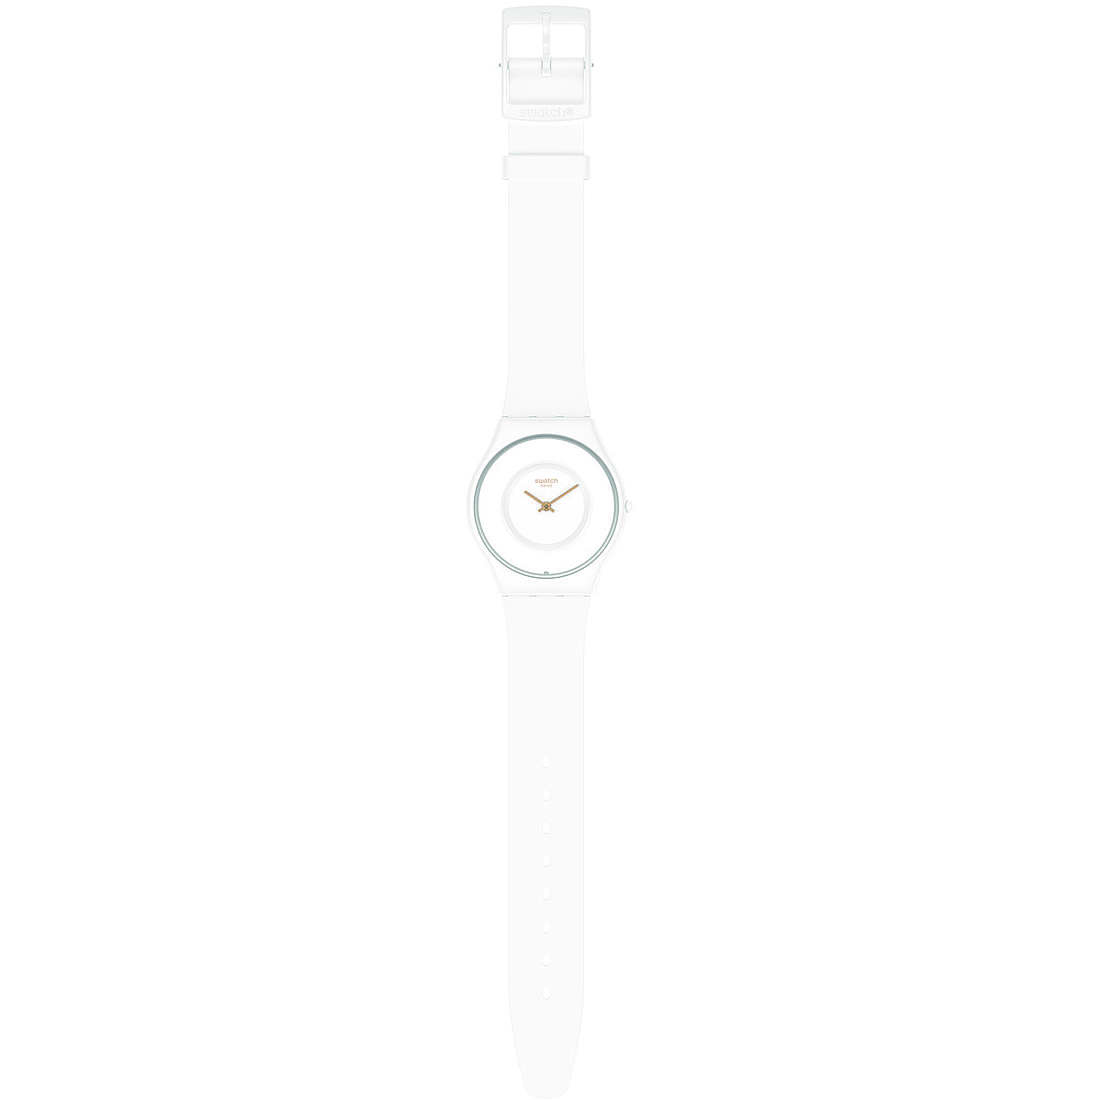 Swatch Bioceramic Case White Skin watch SS09W100